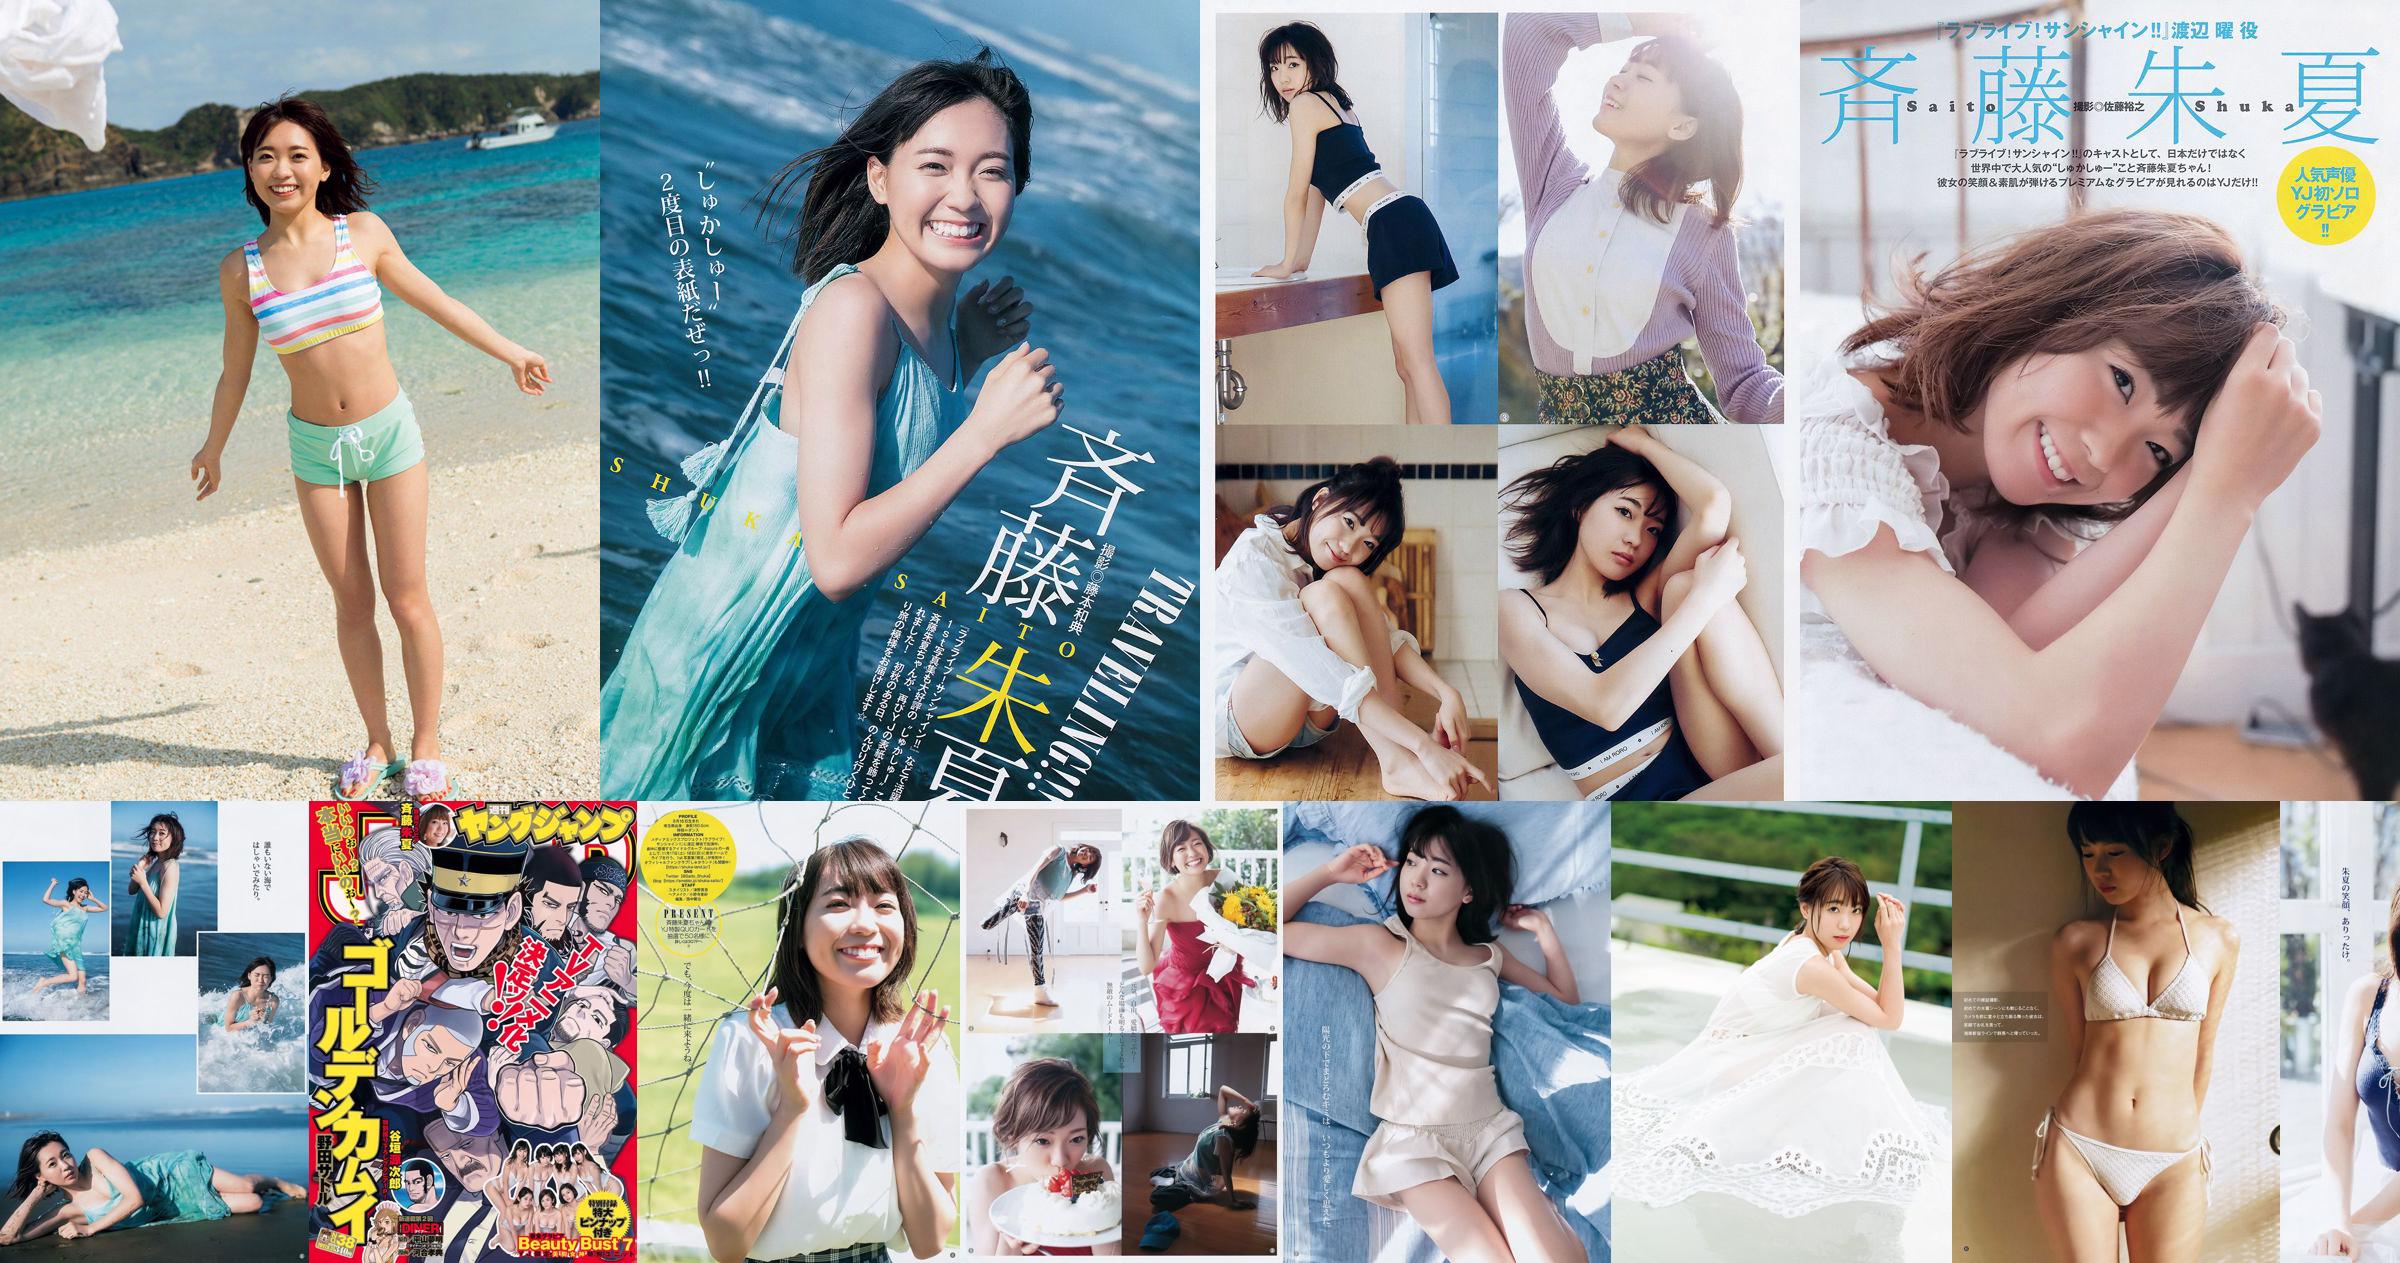 Ито Мираи Toyota Moeie Morisaki Tomomi [Weekly Young Jump] Фото Журнал № 47, 2018 No.594235 Страница 4